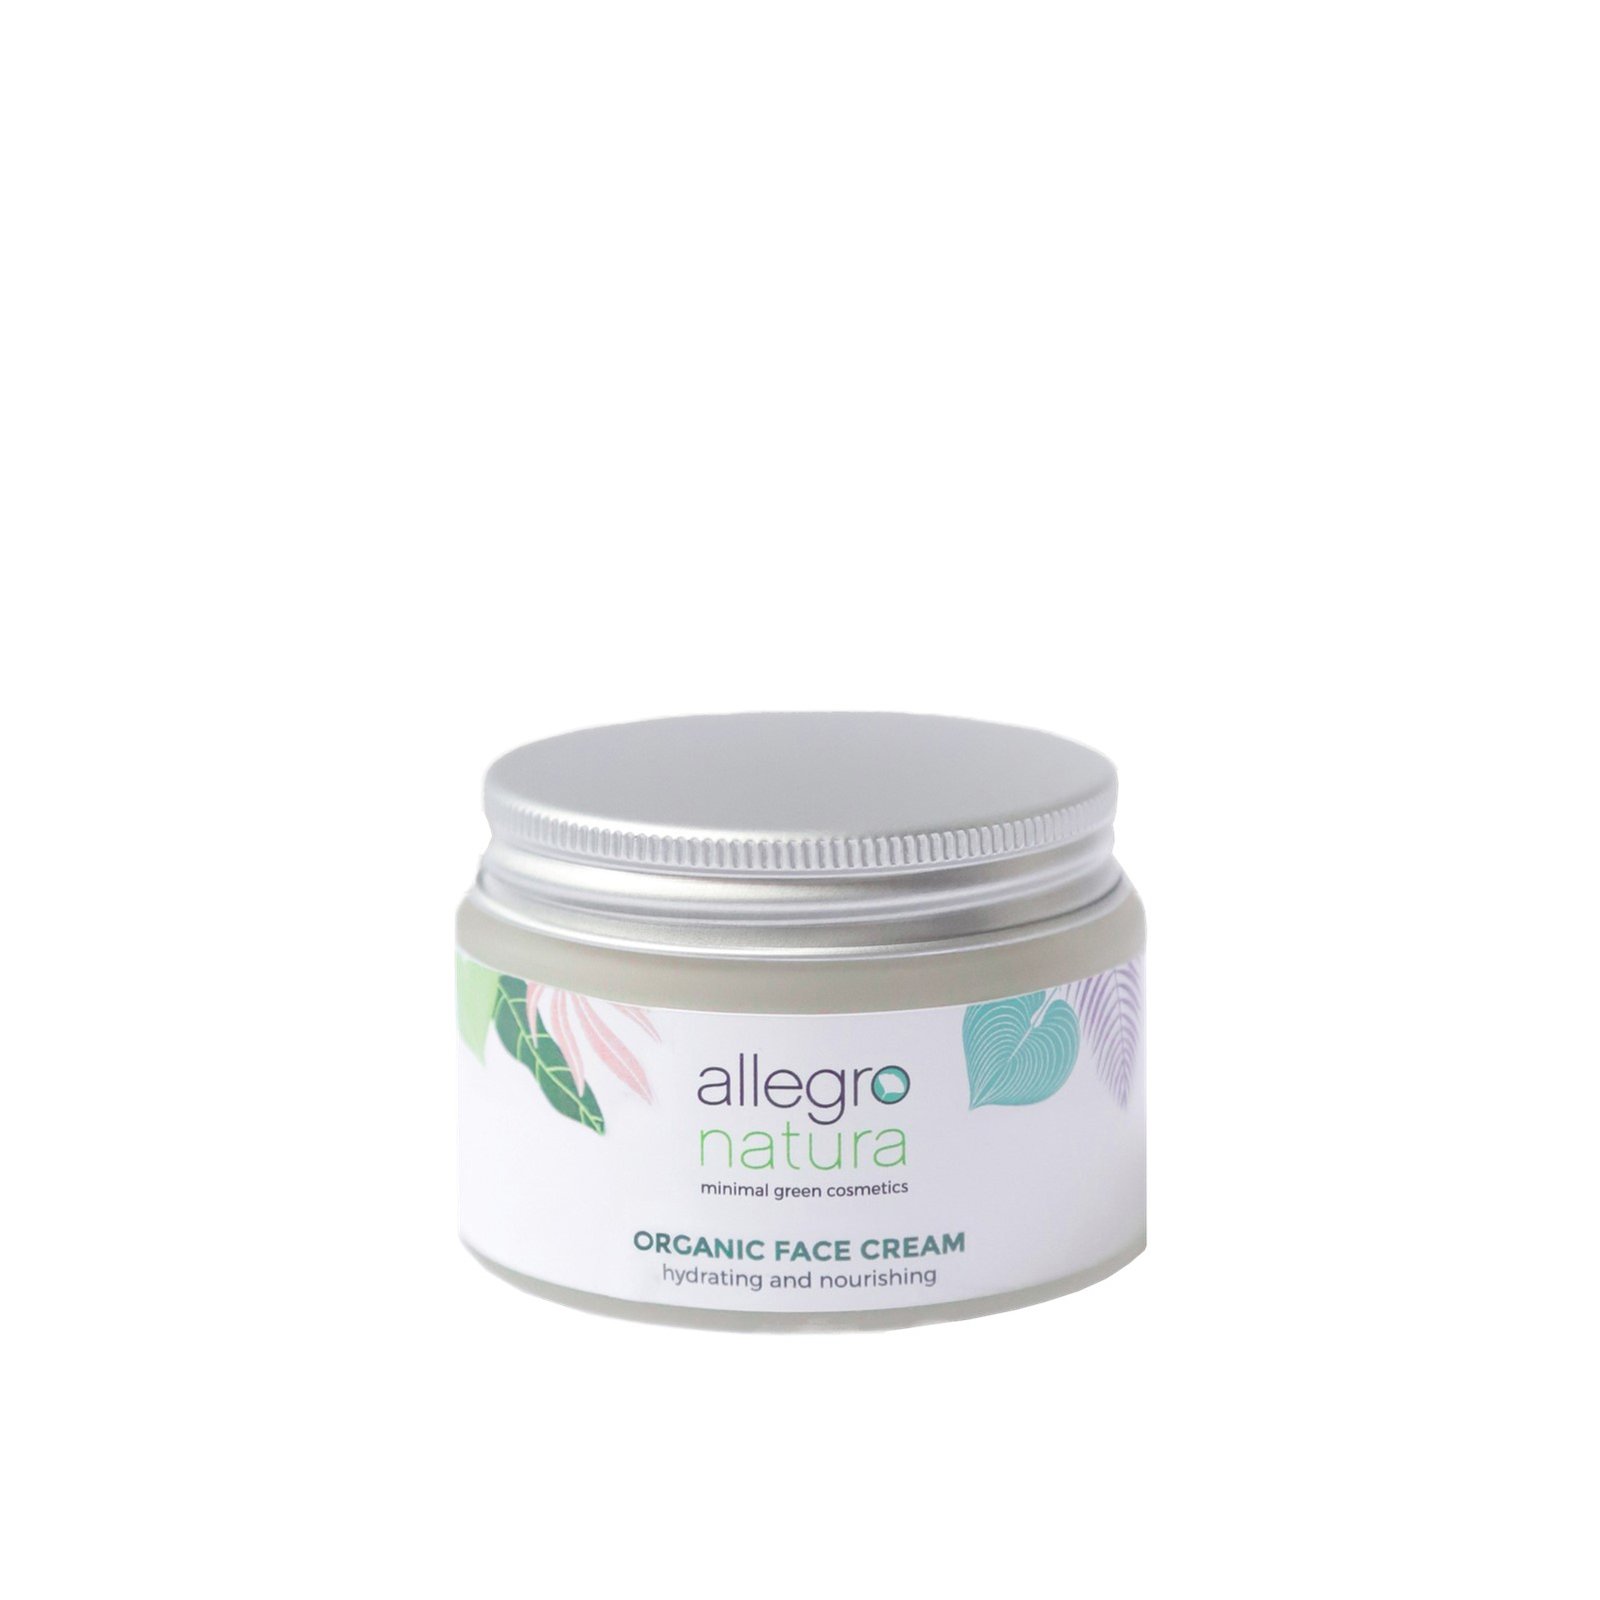 Allegro Natura Hydrating And Nourishing Organic Face Cream 50ml